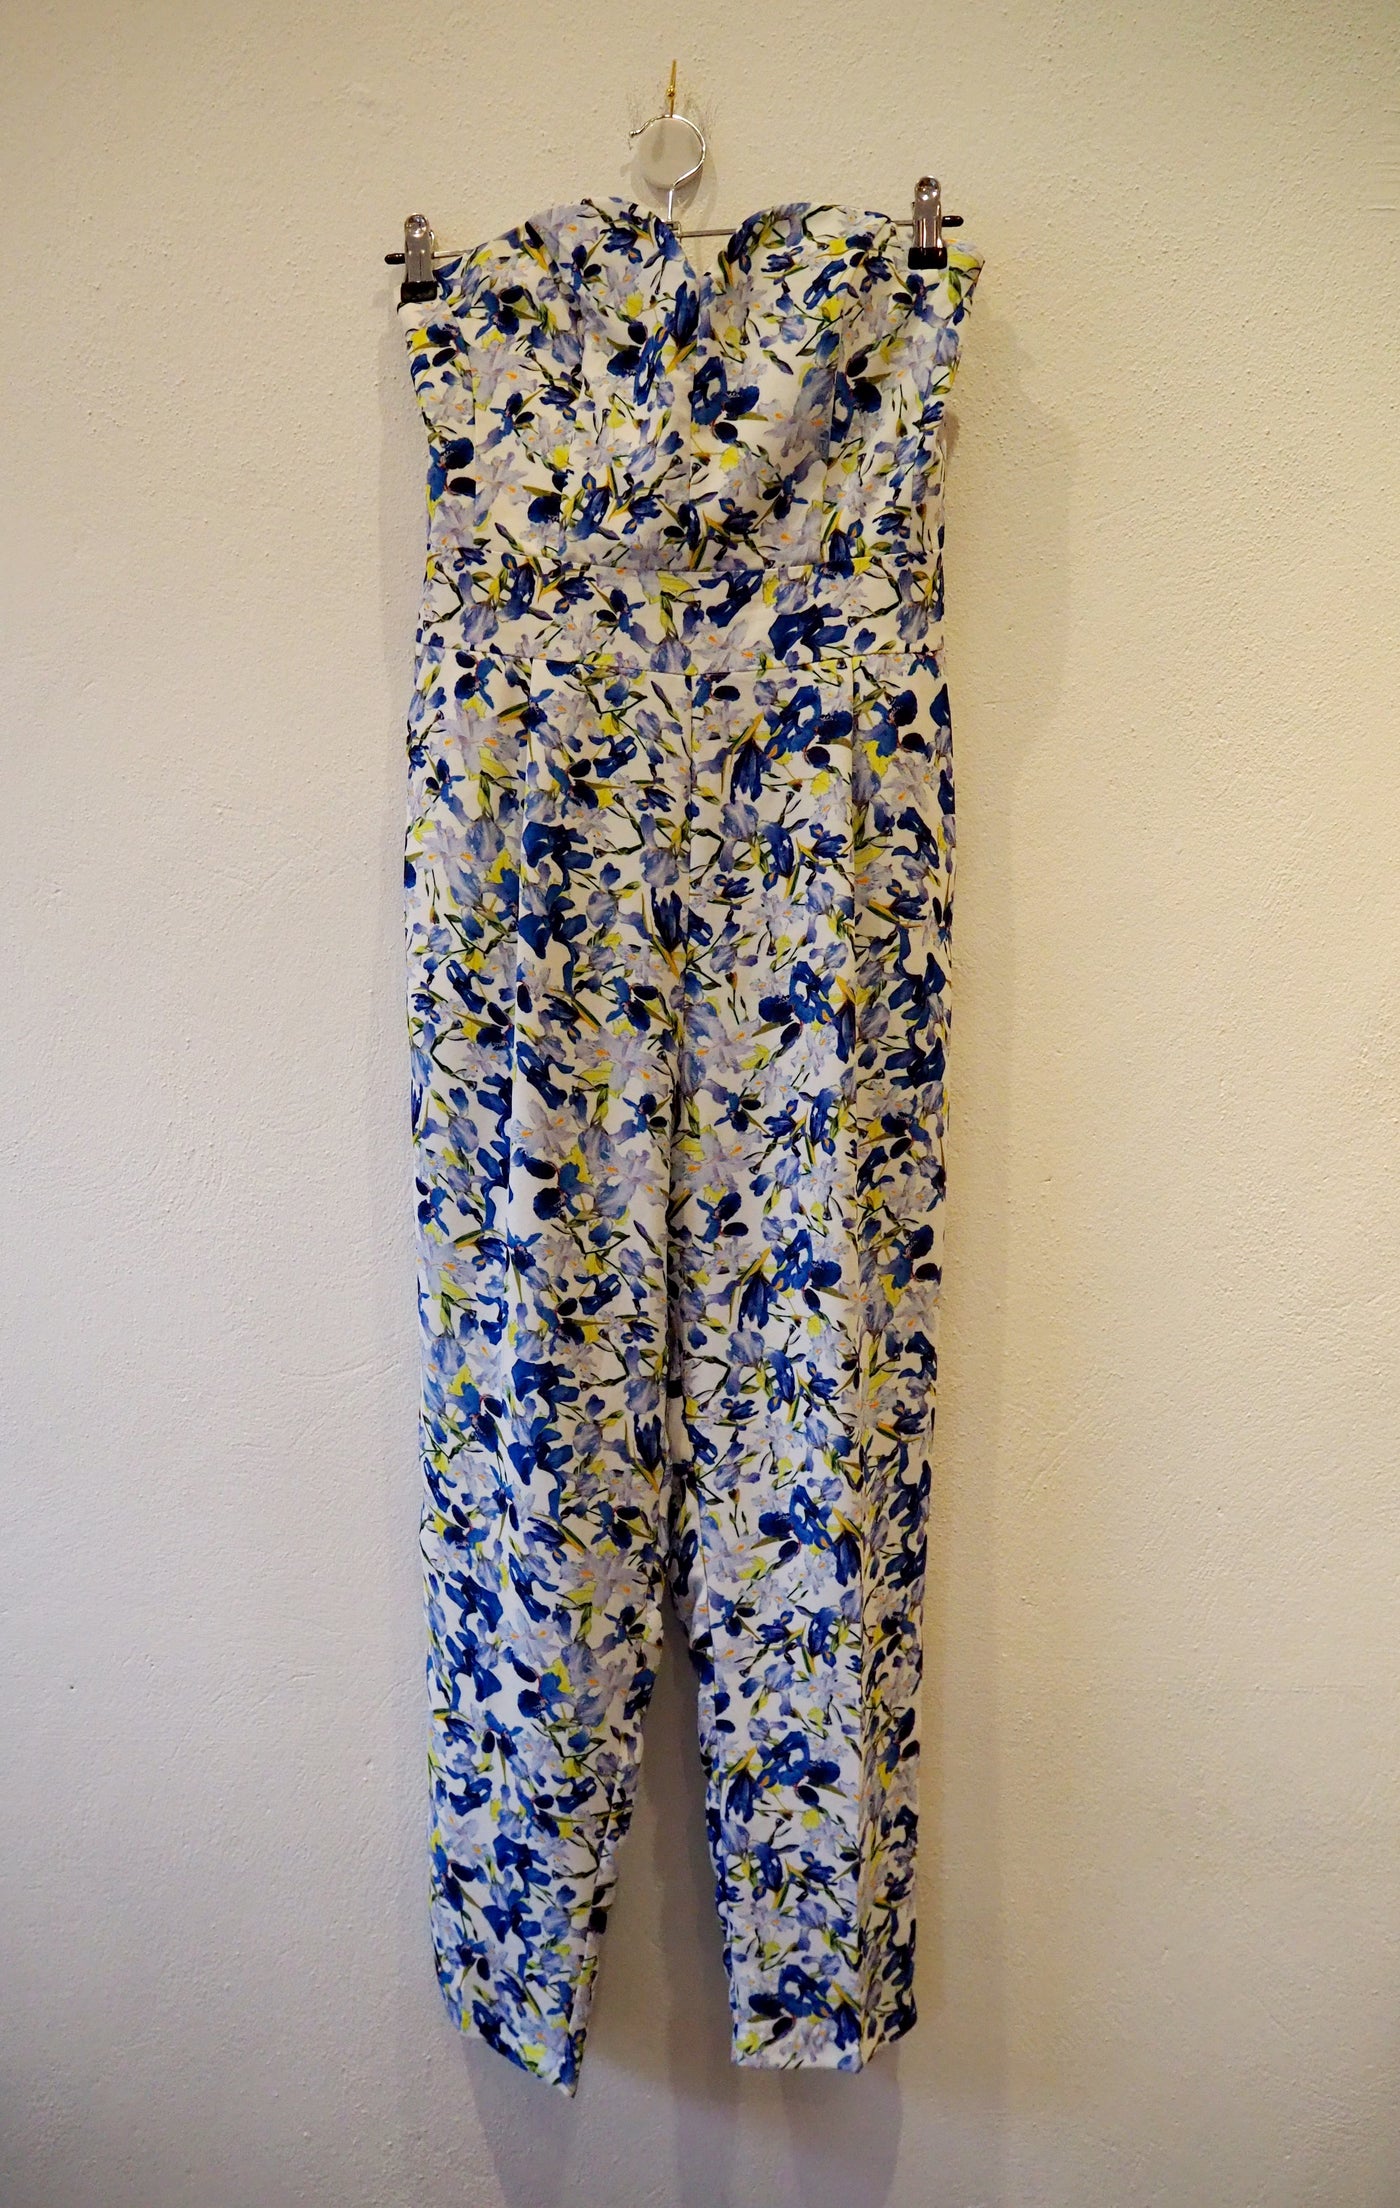 Darling Blue Floral Jumpsuit & Jacket Size 10/12